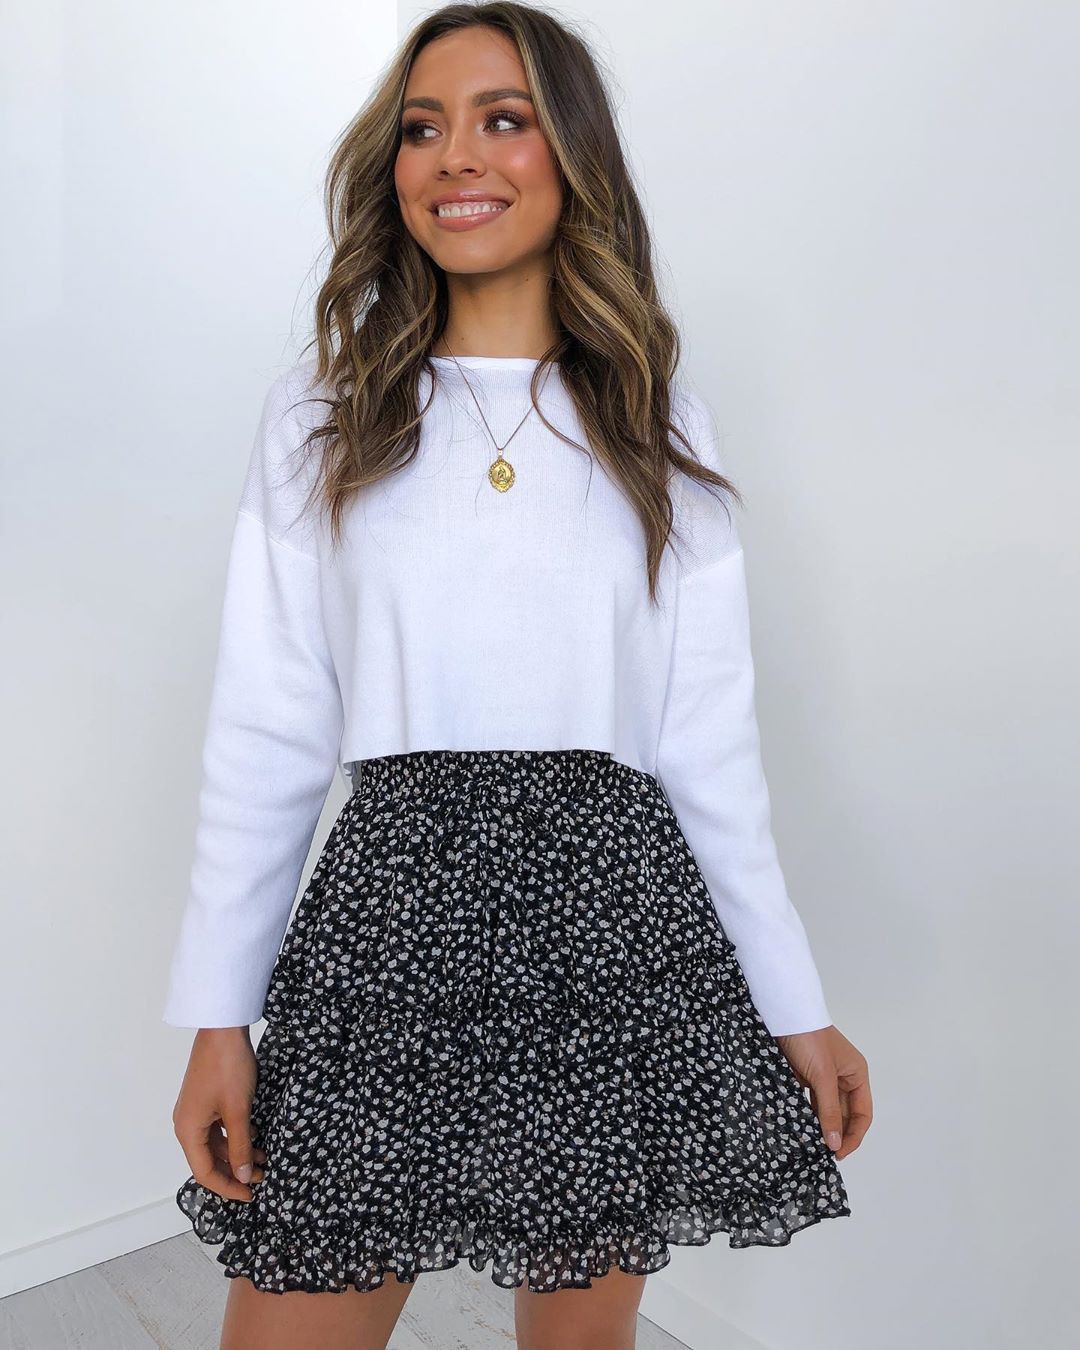 Ideas de vestidos en blanco y negro con minifalda, pantalón, falda.: Atuendos Para Citas,  Selfie leslie,  Traje Blanco Y Negro  